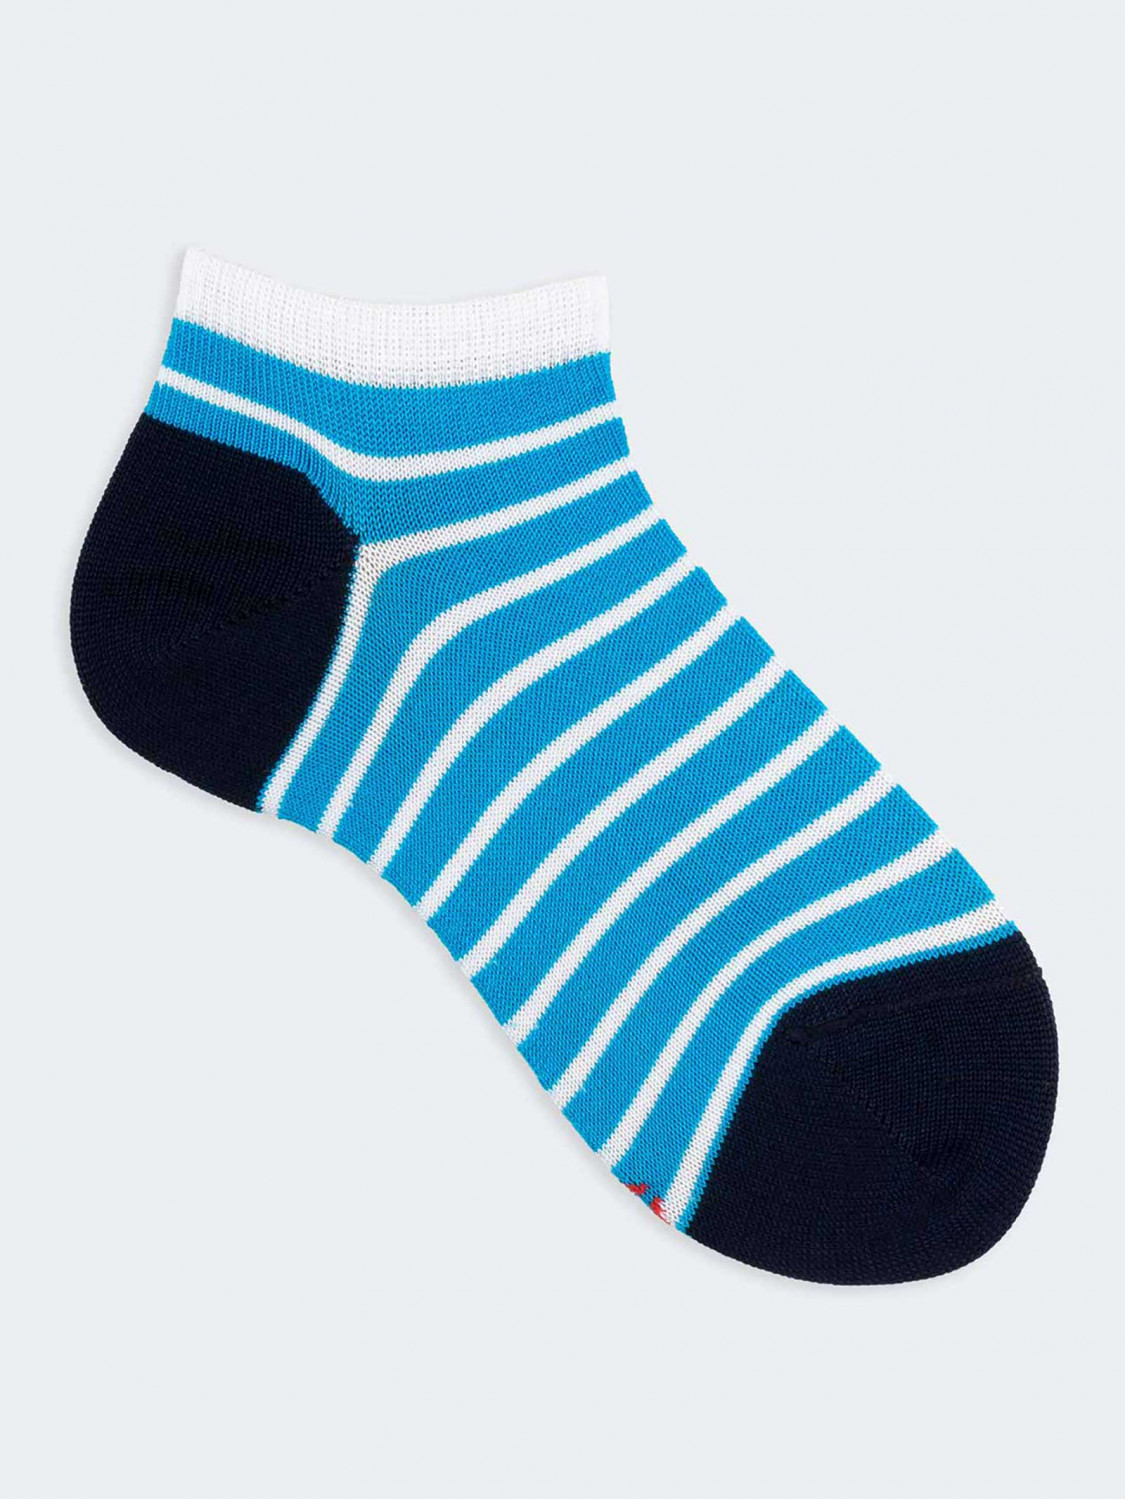 Kontrastreich gestreifte, gemusterte kurze Socken für Jungen